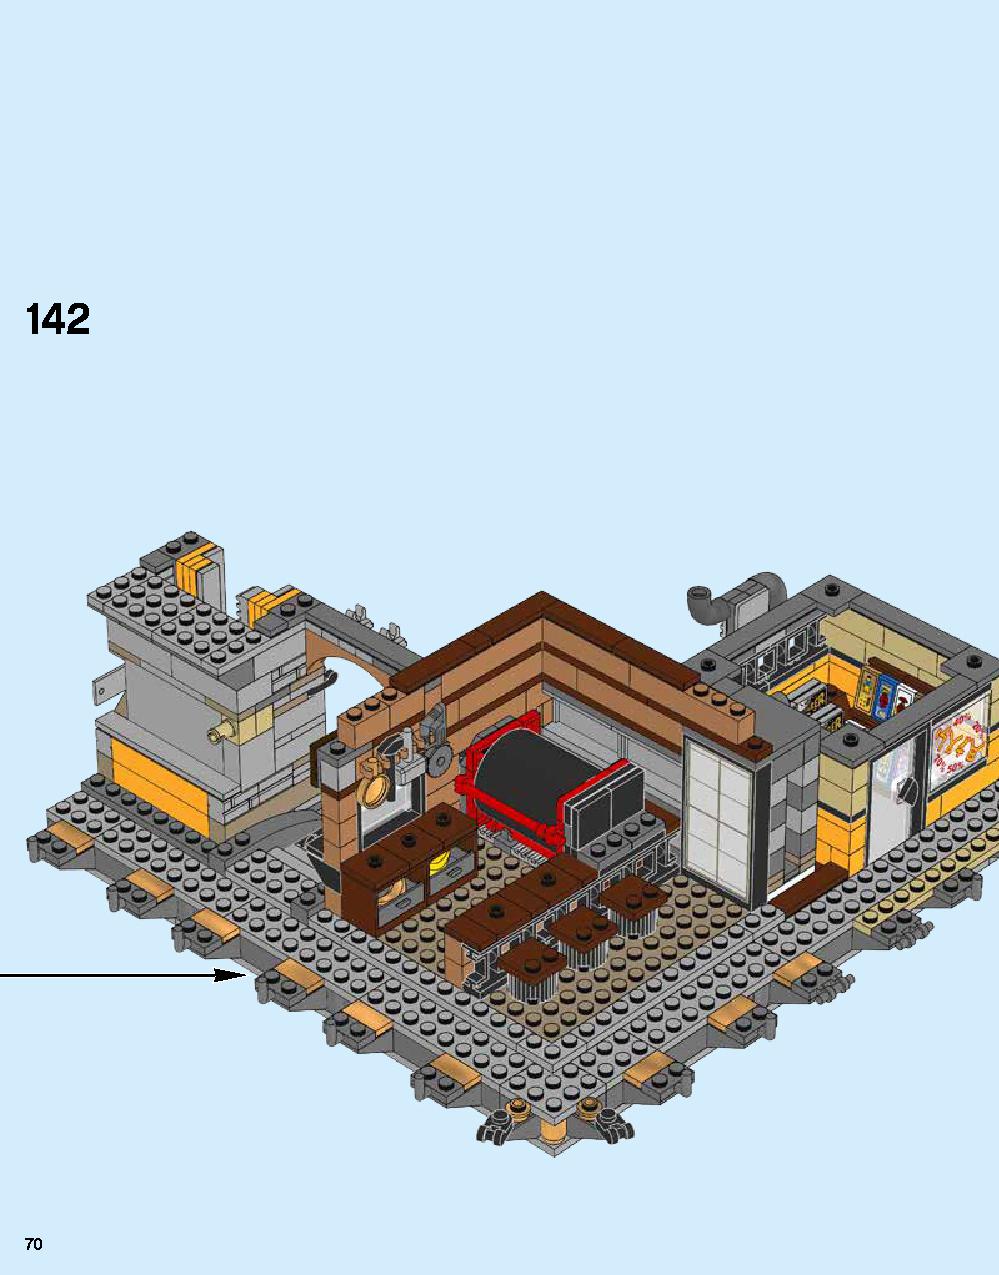 ニンジャゴー シティ 70620 レゴの商品情報 レゴの説明書・組立方法 70 page